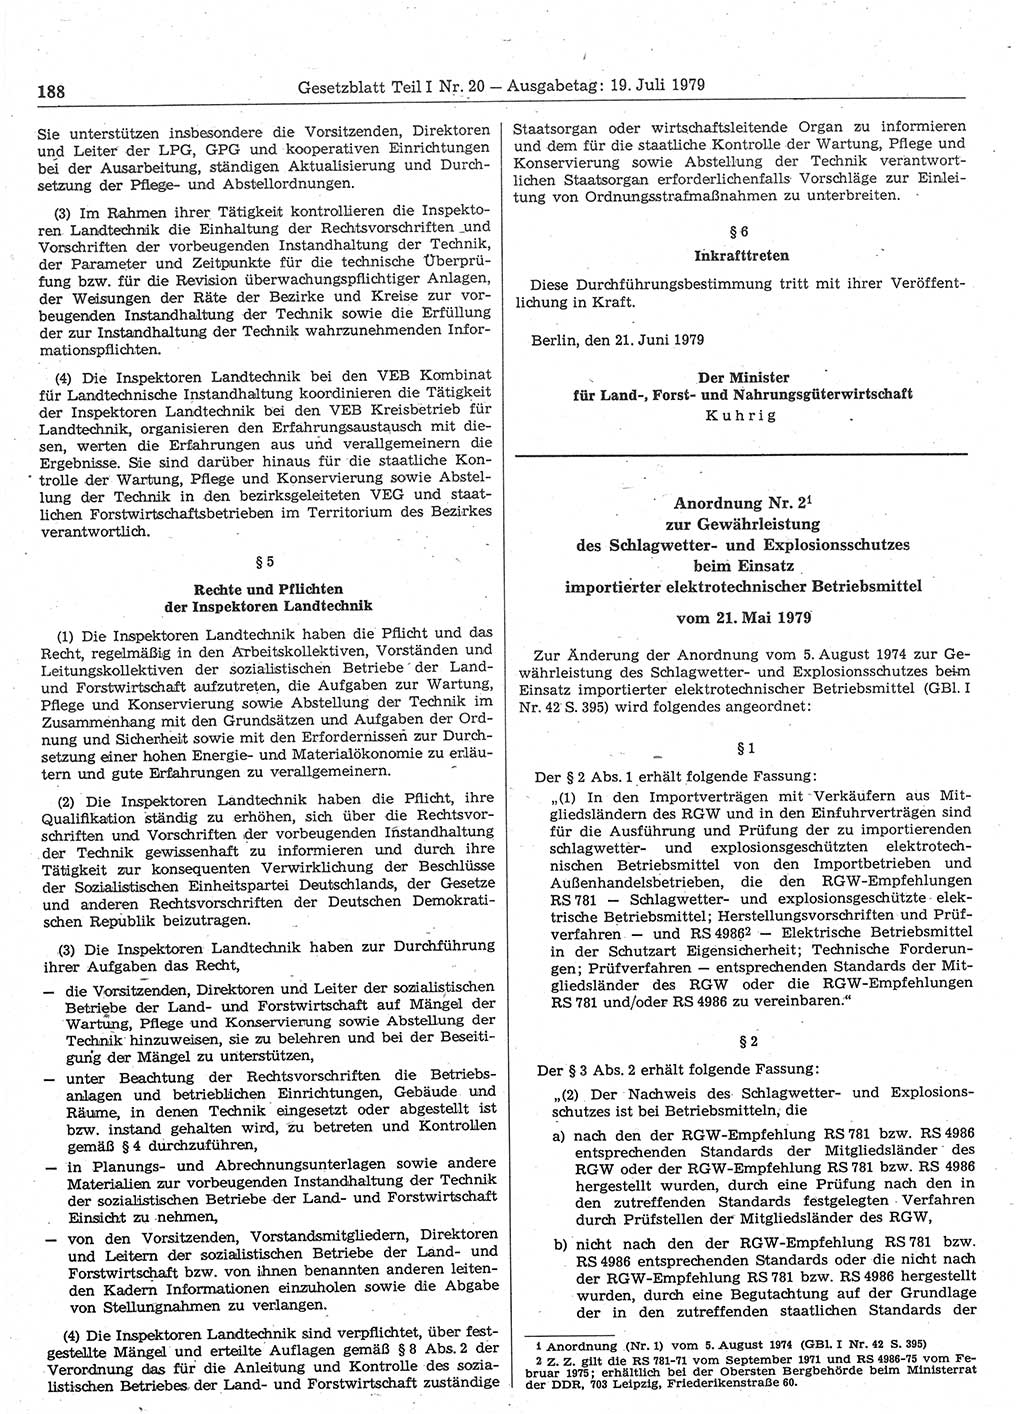 Gesetzblatt (GBl.) der Deutschen Demokratischen Republik (DDR) Teil Ⅰ 1979, Seite 188 (GBl. DDR Ⅰ 1979, S. 188)